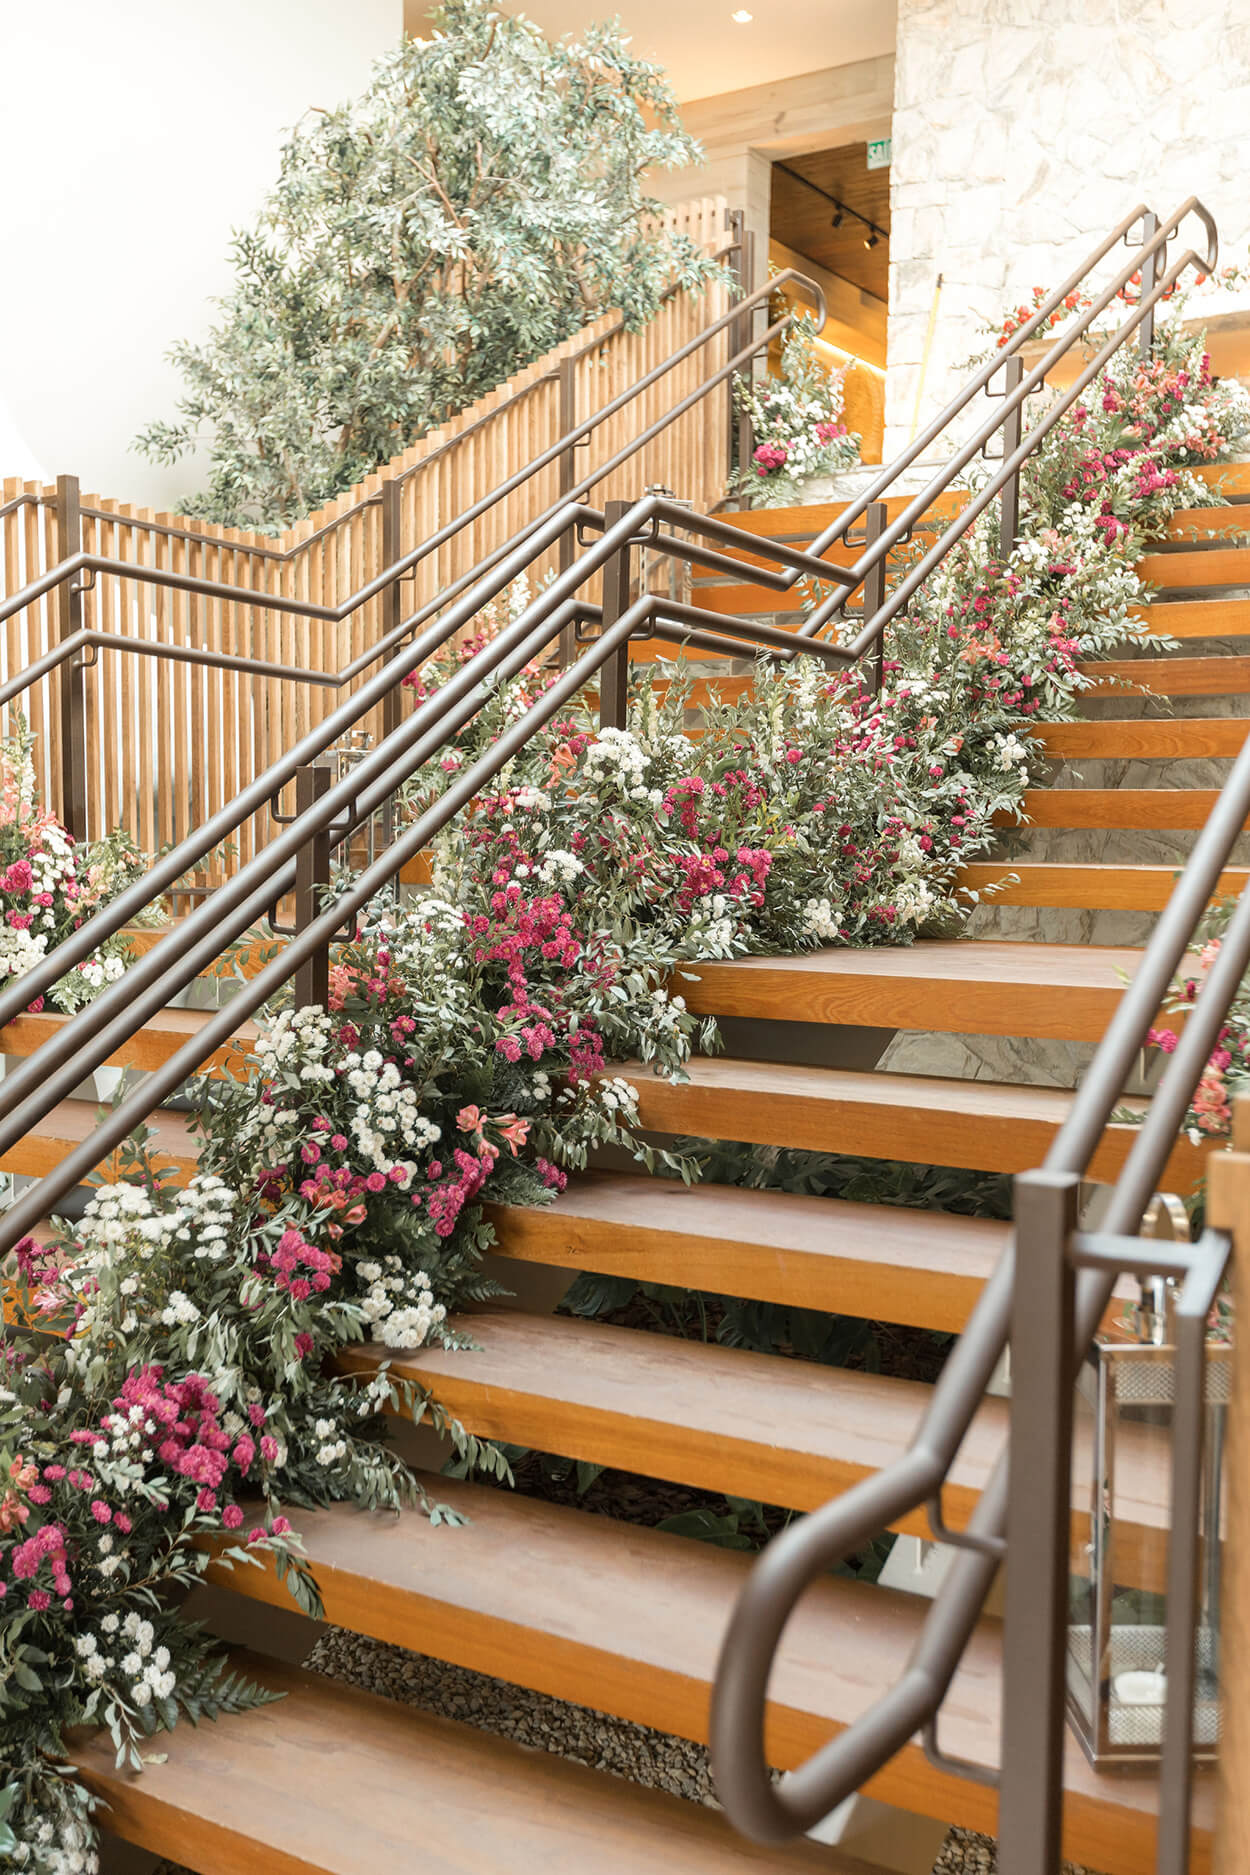 Escada de madeira decorada com flores brancas e cor de rosa